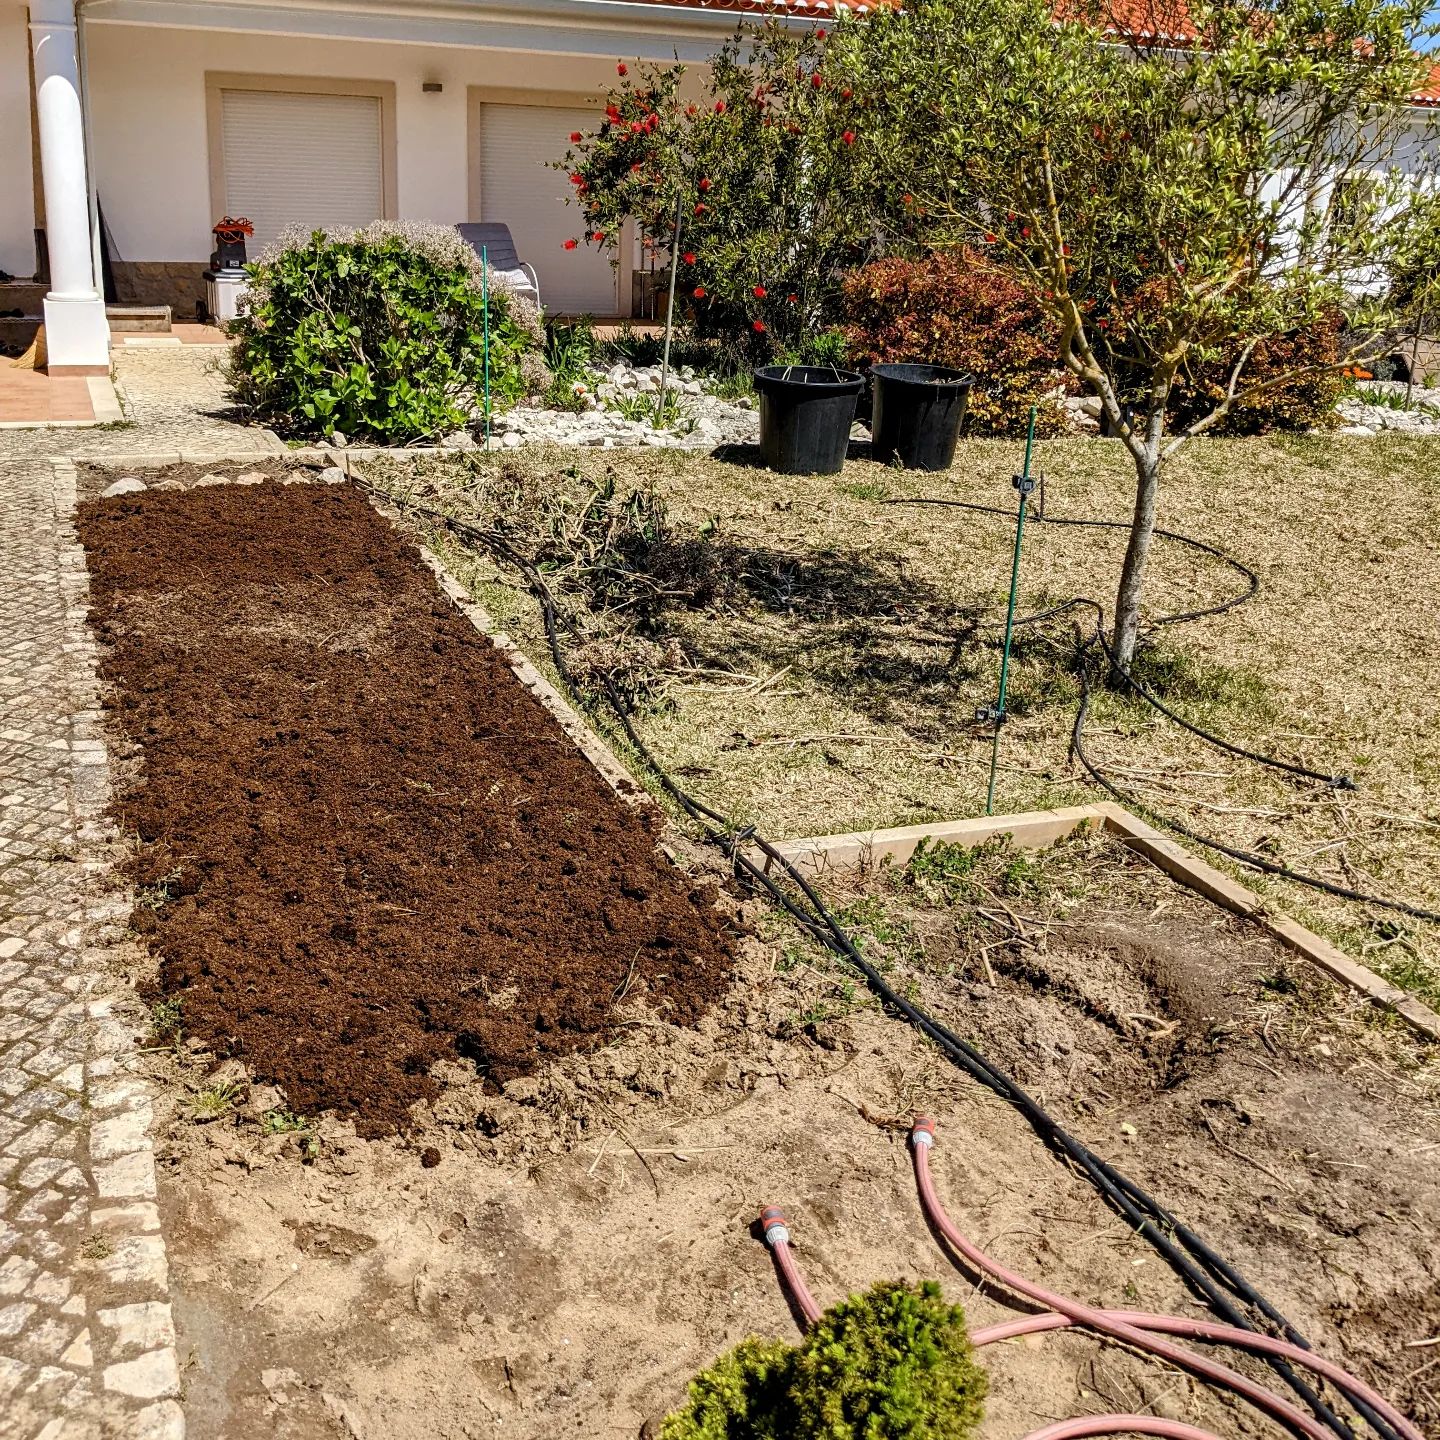 Preparing former hortênsia spot for planting